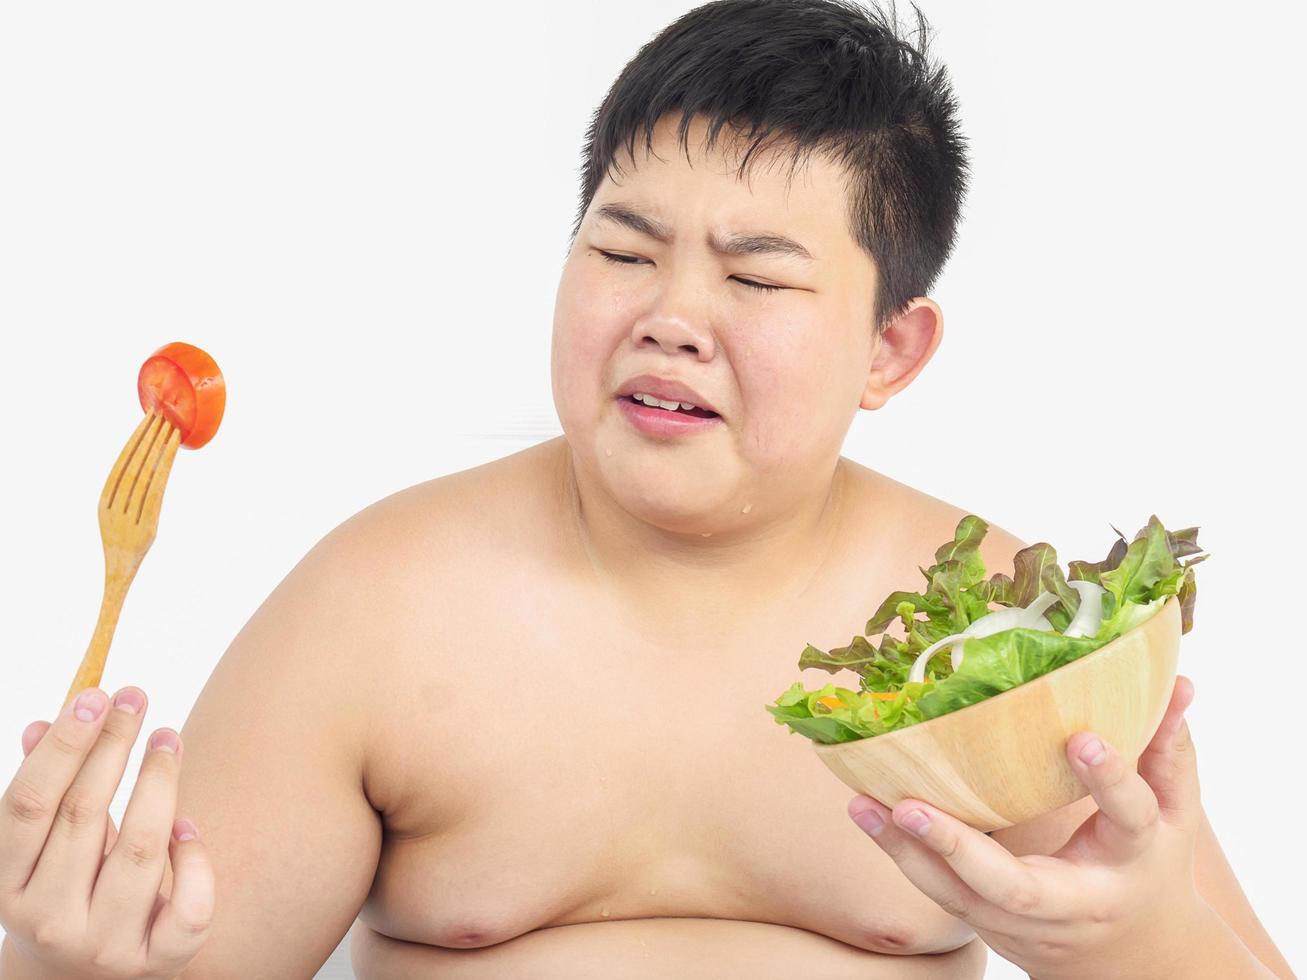 en tjock pojke hatar att äta grönsakssallad foto